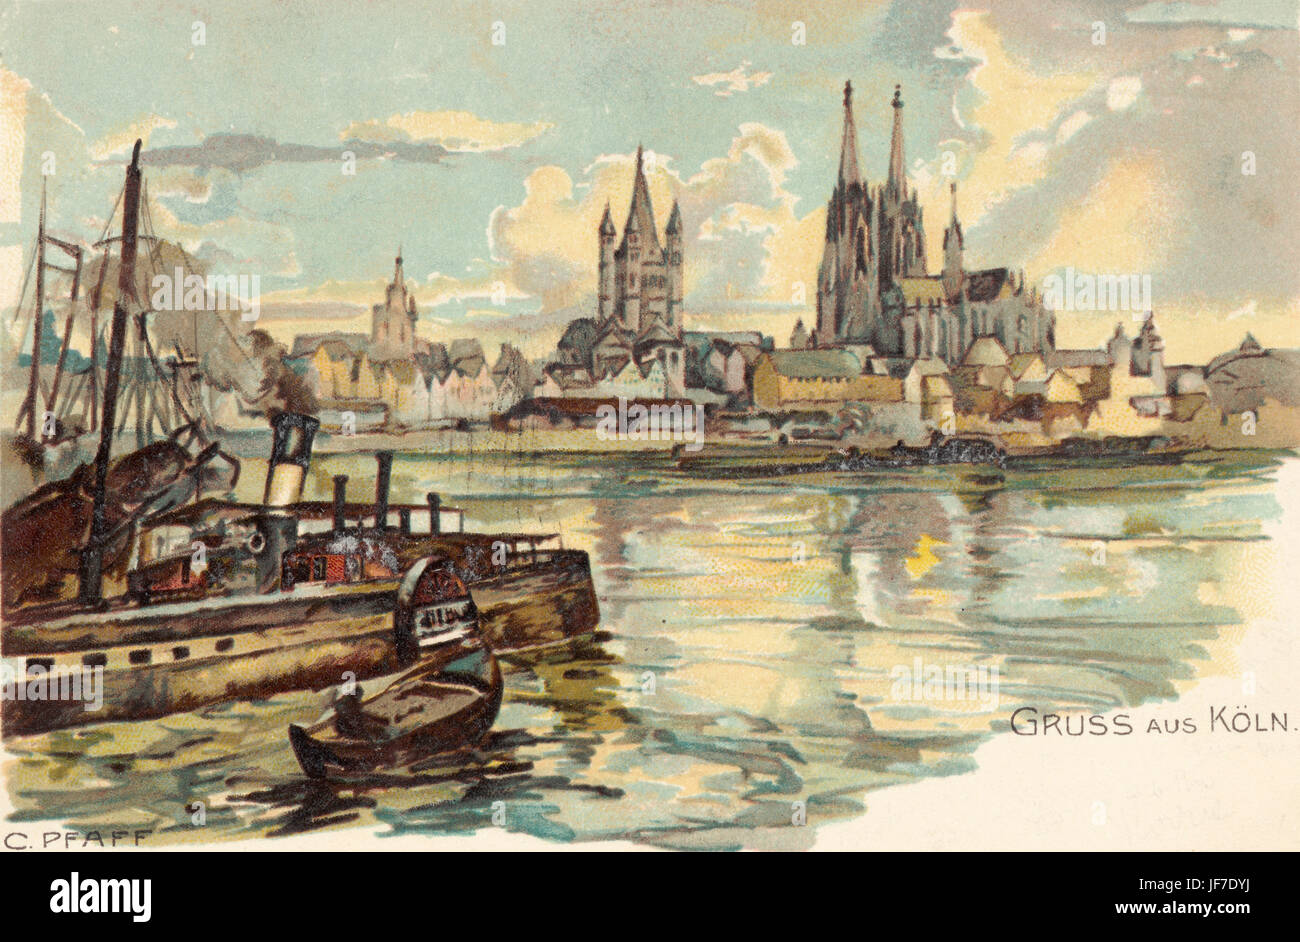 Köln (Köln) - Blick auf den Fluss Rhein und Kölner Dom (Dom) von C. Pfaff, c. 1899. Aquarell. Stockfoto